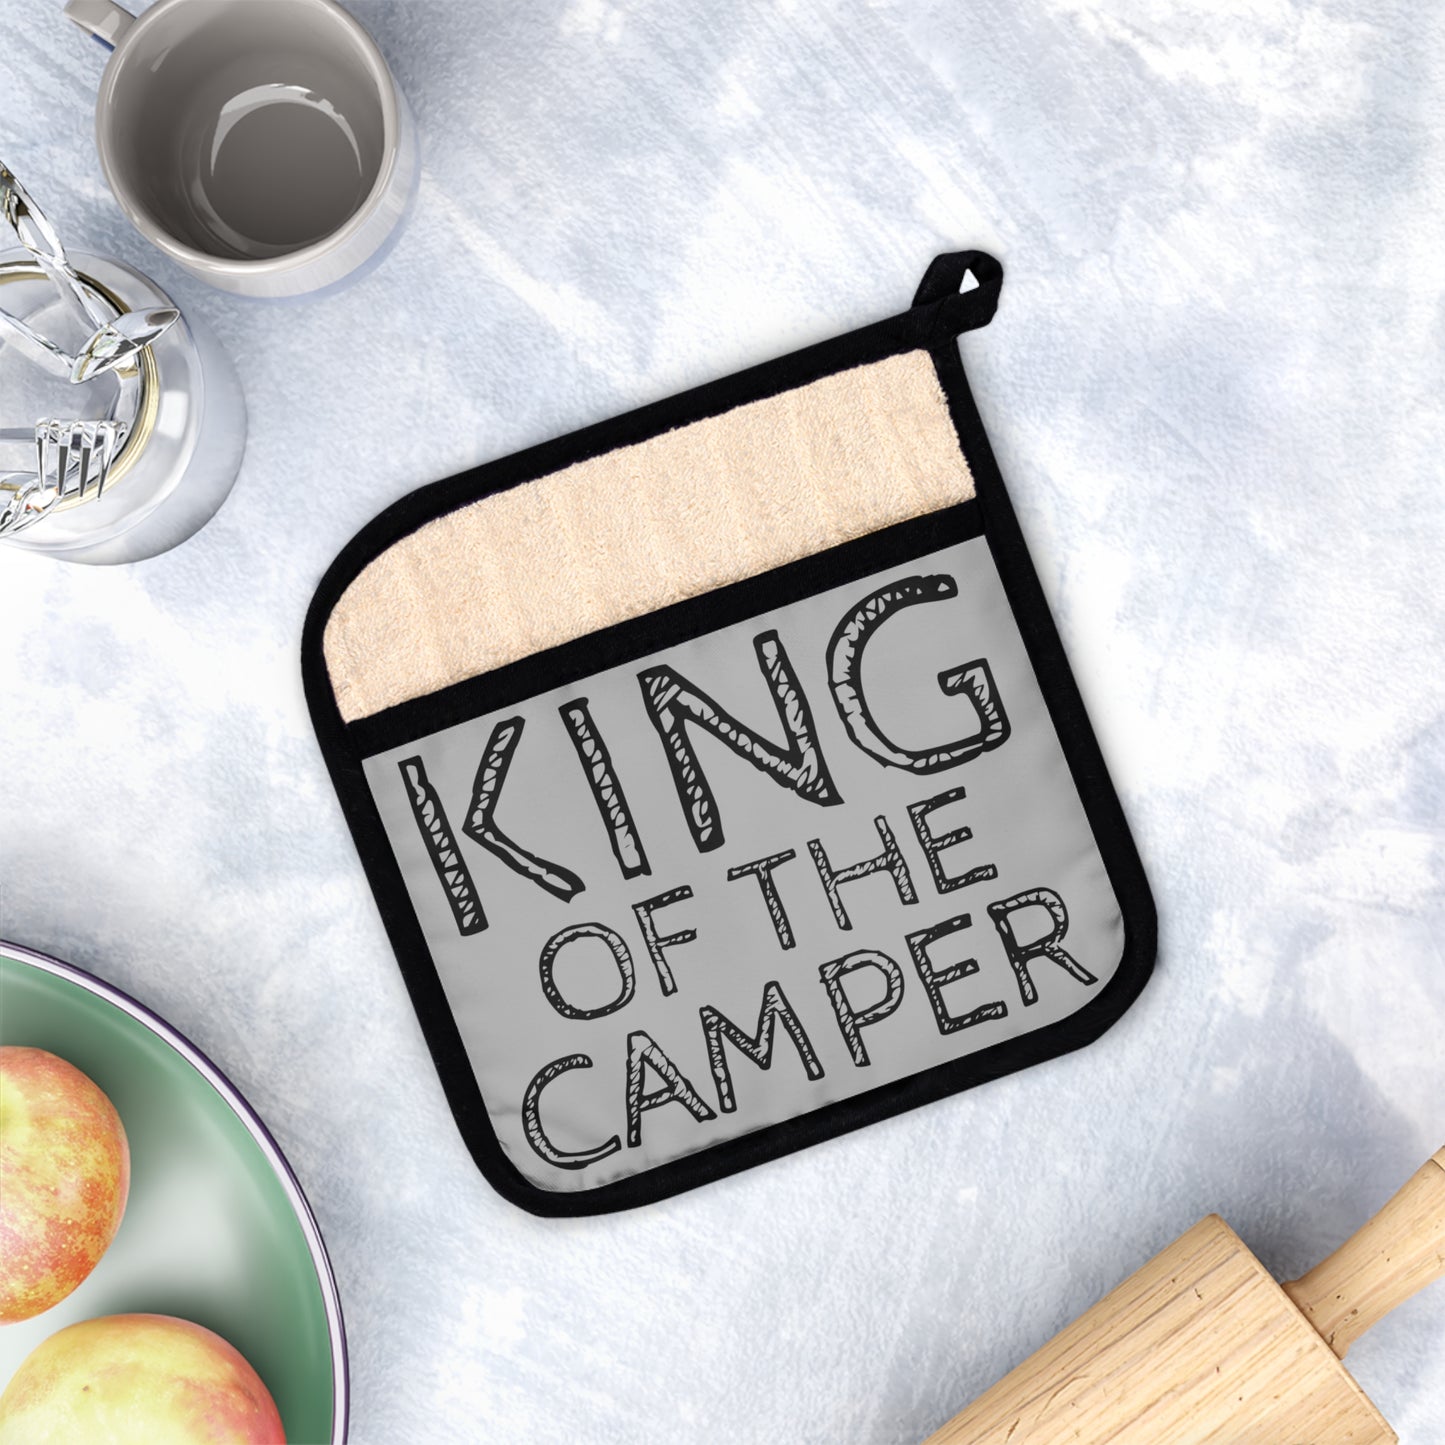 KING OF THE CAMPER Pot Holder with Pocket